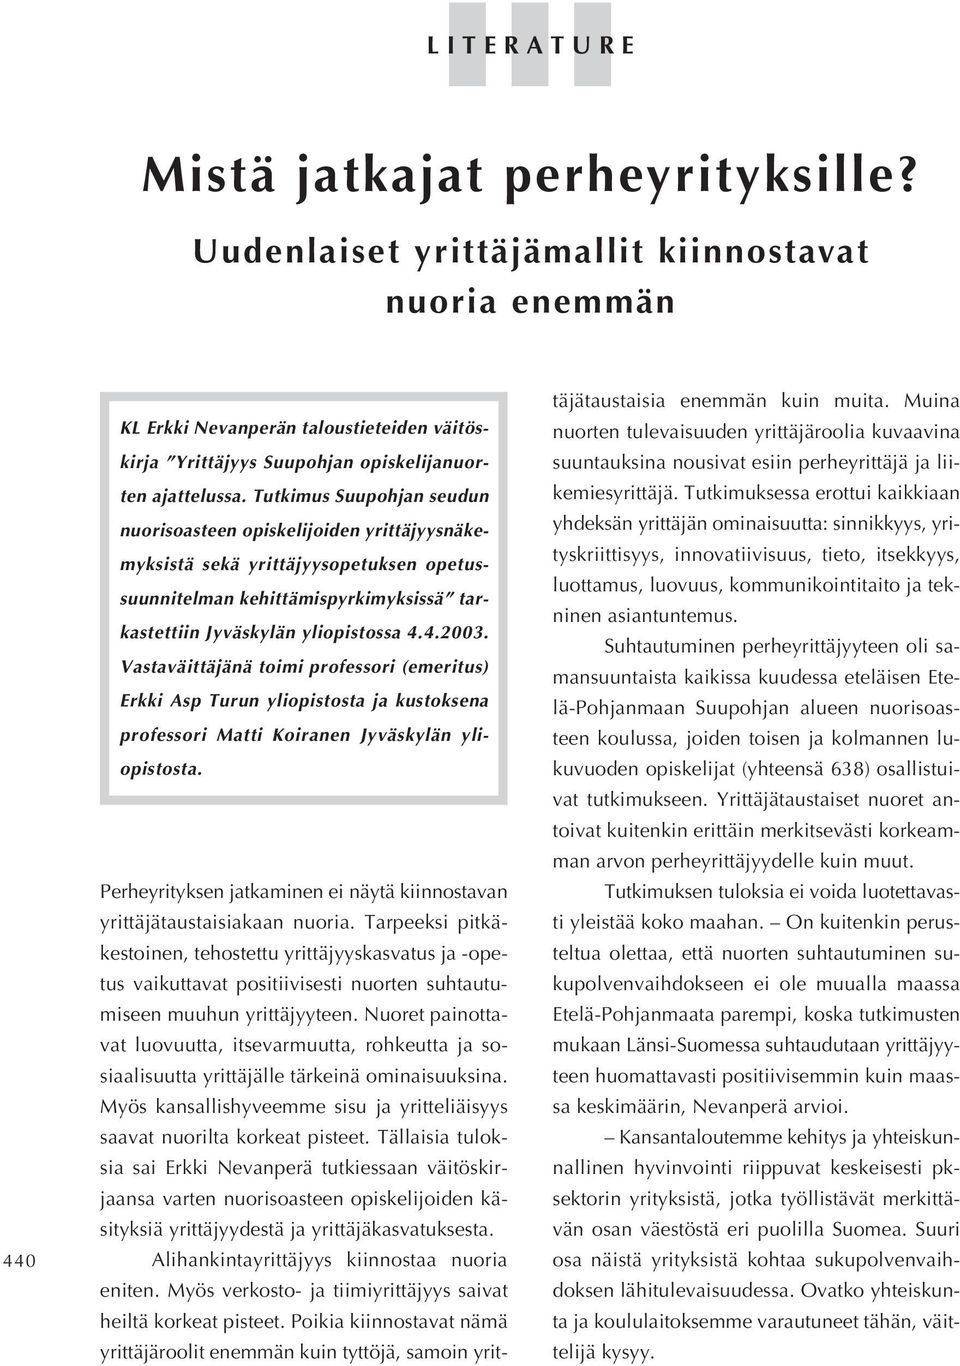 Tutkimus Suupohjan seudun nuorisoasteen opiskelijoiden yrittäjyysnäkemyksistä sekä yrittäjyysopetuksen opetussuunnitelman kehittämispyrkimyksissä tarkastettiin Jyväskylän yliopistossa 4.4.2003.